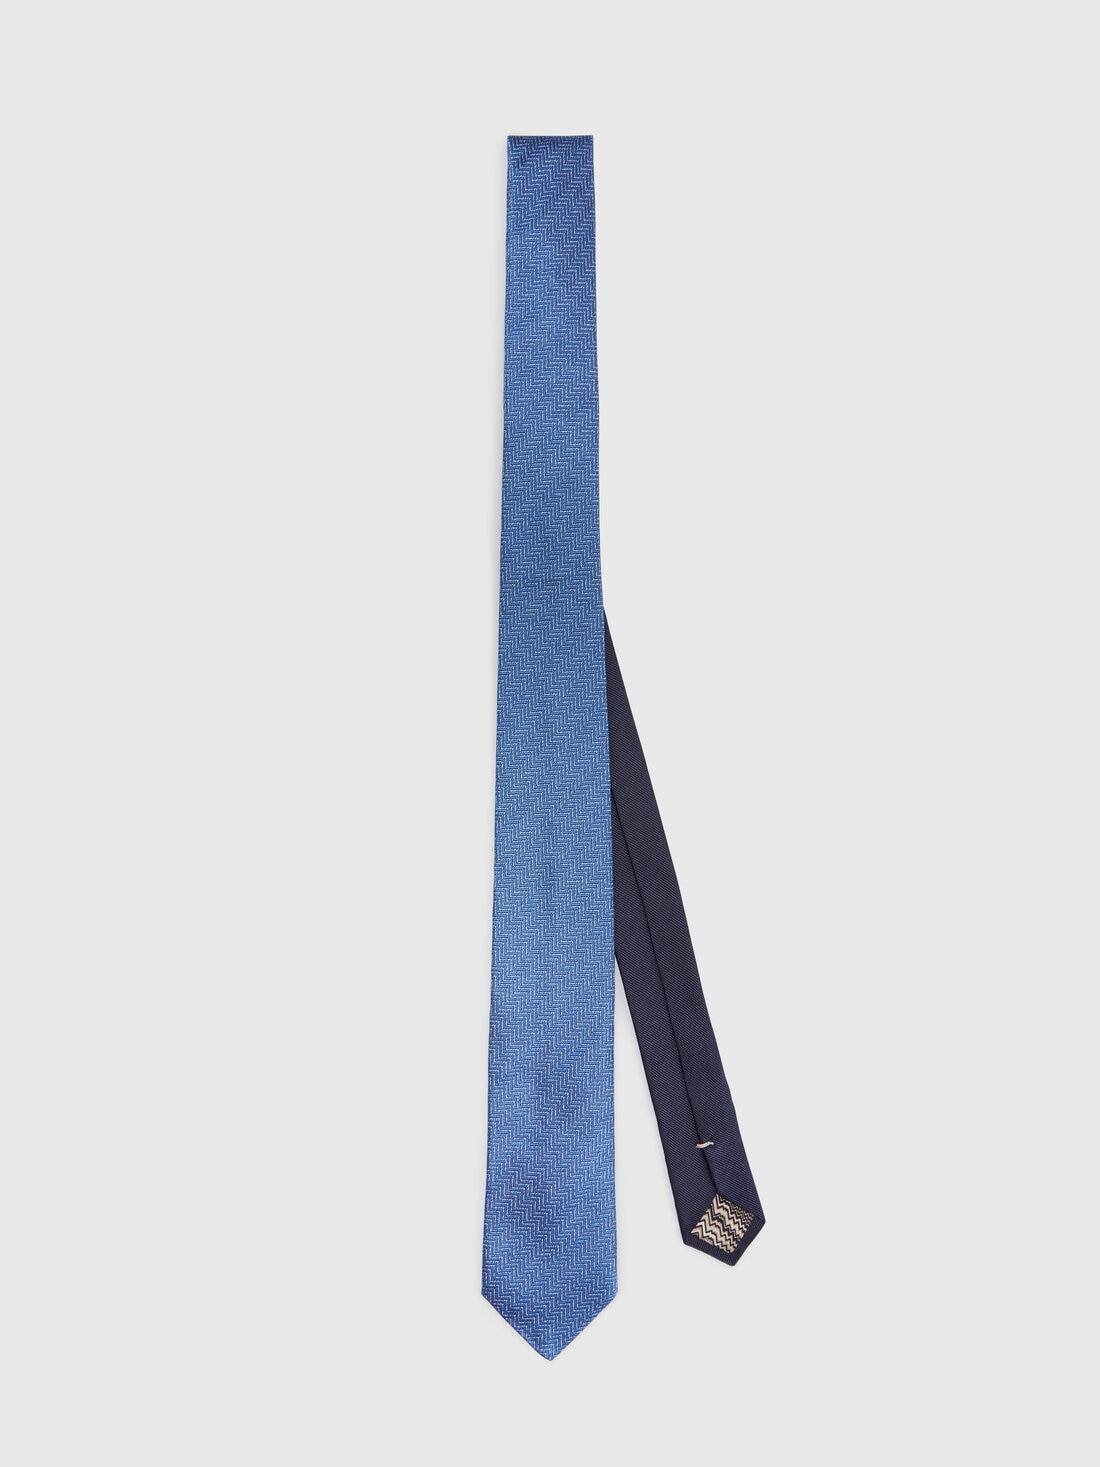 Silk chevron tie, Multicoloured  - 8053147141930 - 0